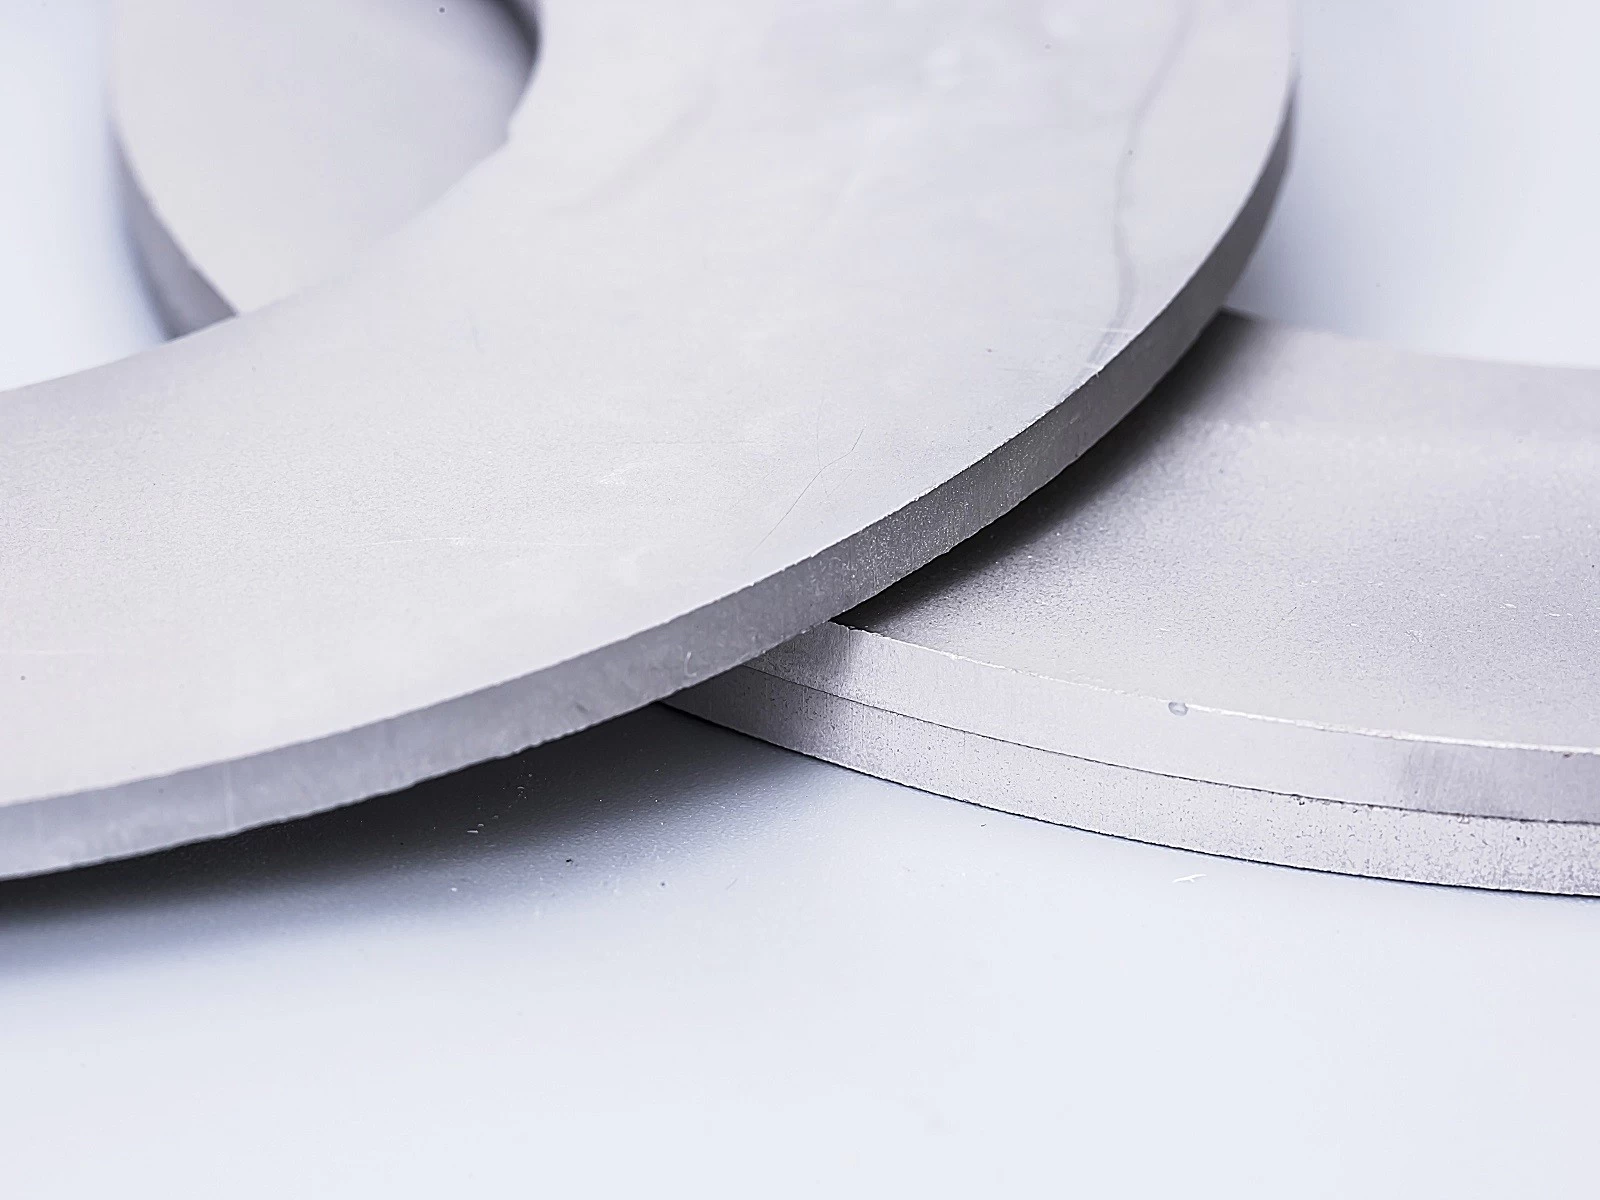 Carbide Cutting Disc